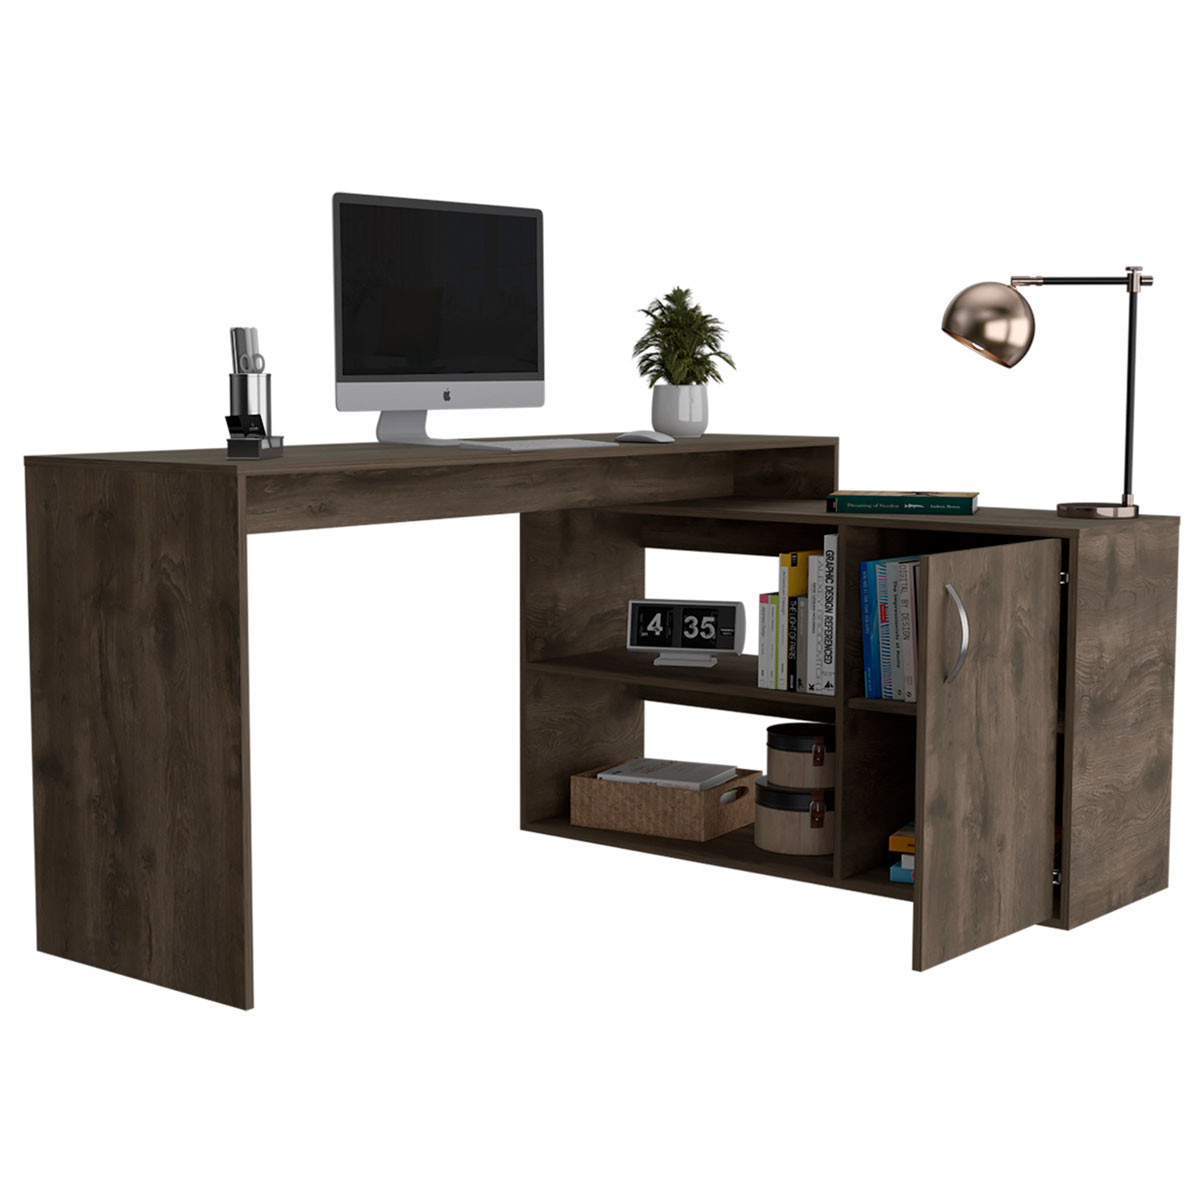 Muebles Axis  Muebles de Calidad para tu Casa y Oficina